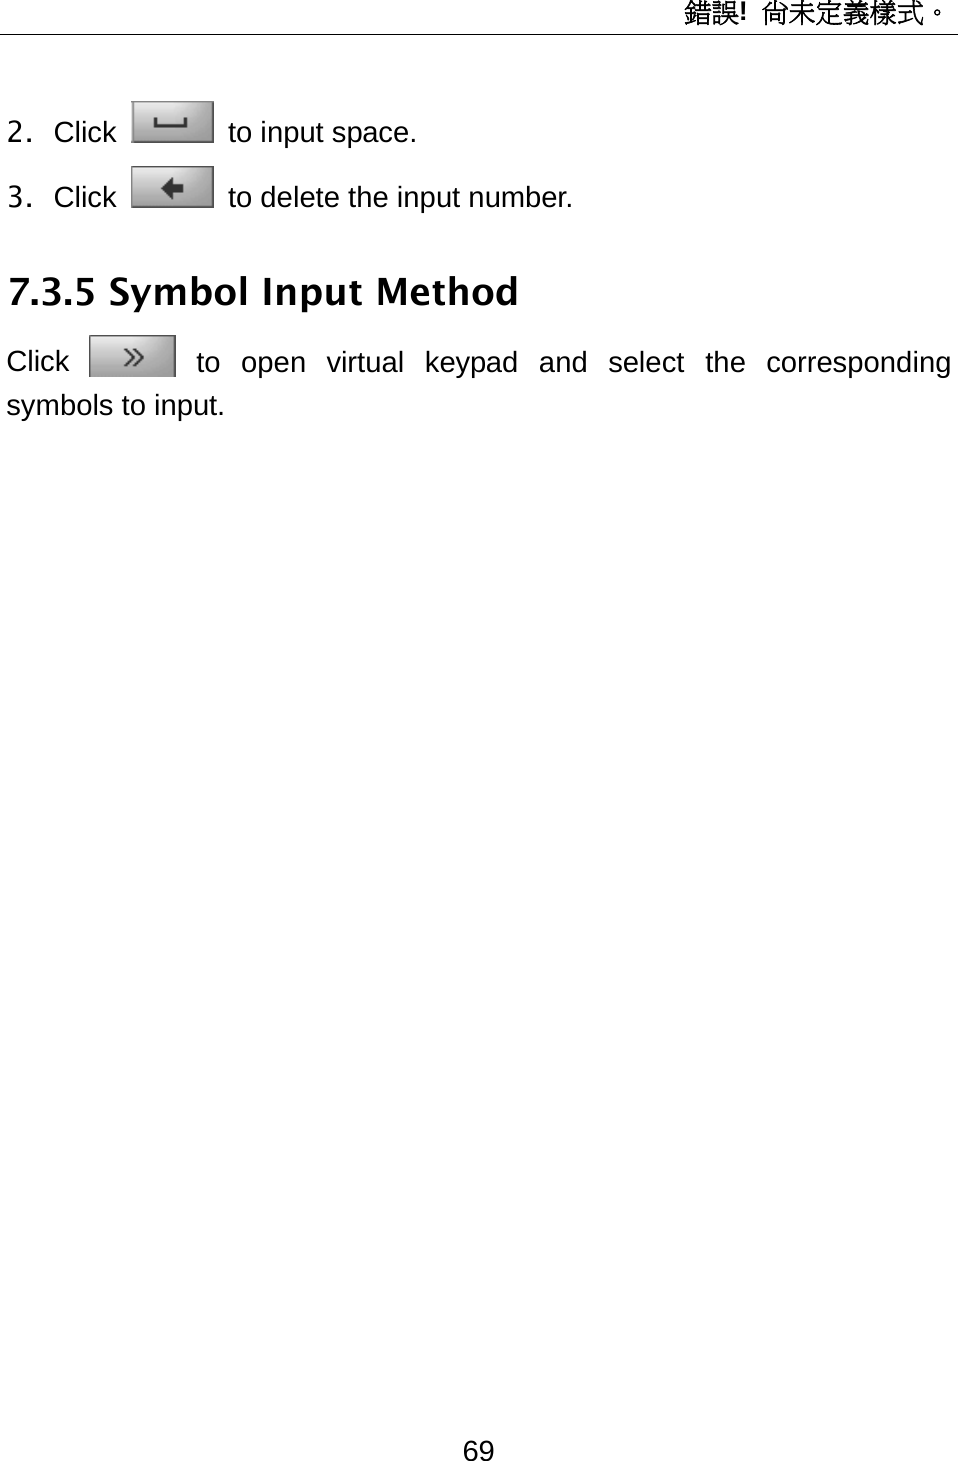 錯誤!  尚未定義樣式。 69 2. Click  to input space. 3. Click   to delete the input number. 7.3.5 Symbol Input Method Click  to open virtual keypad and select the corresponding symbols to input. 